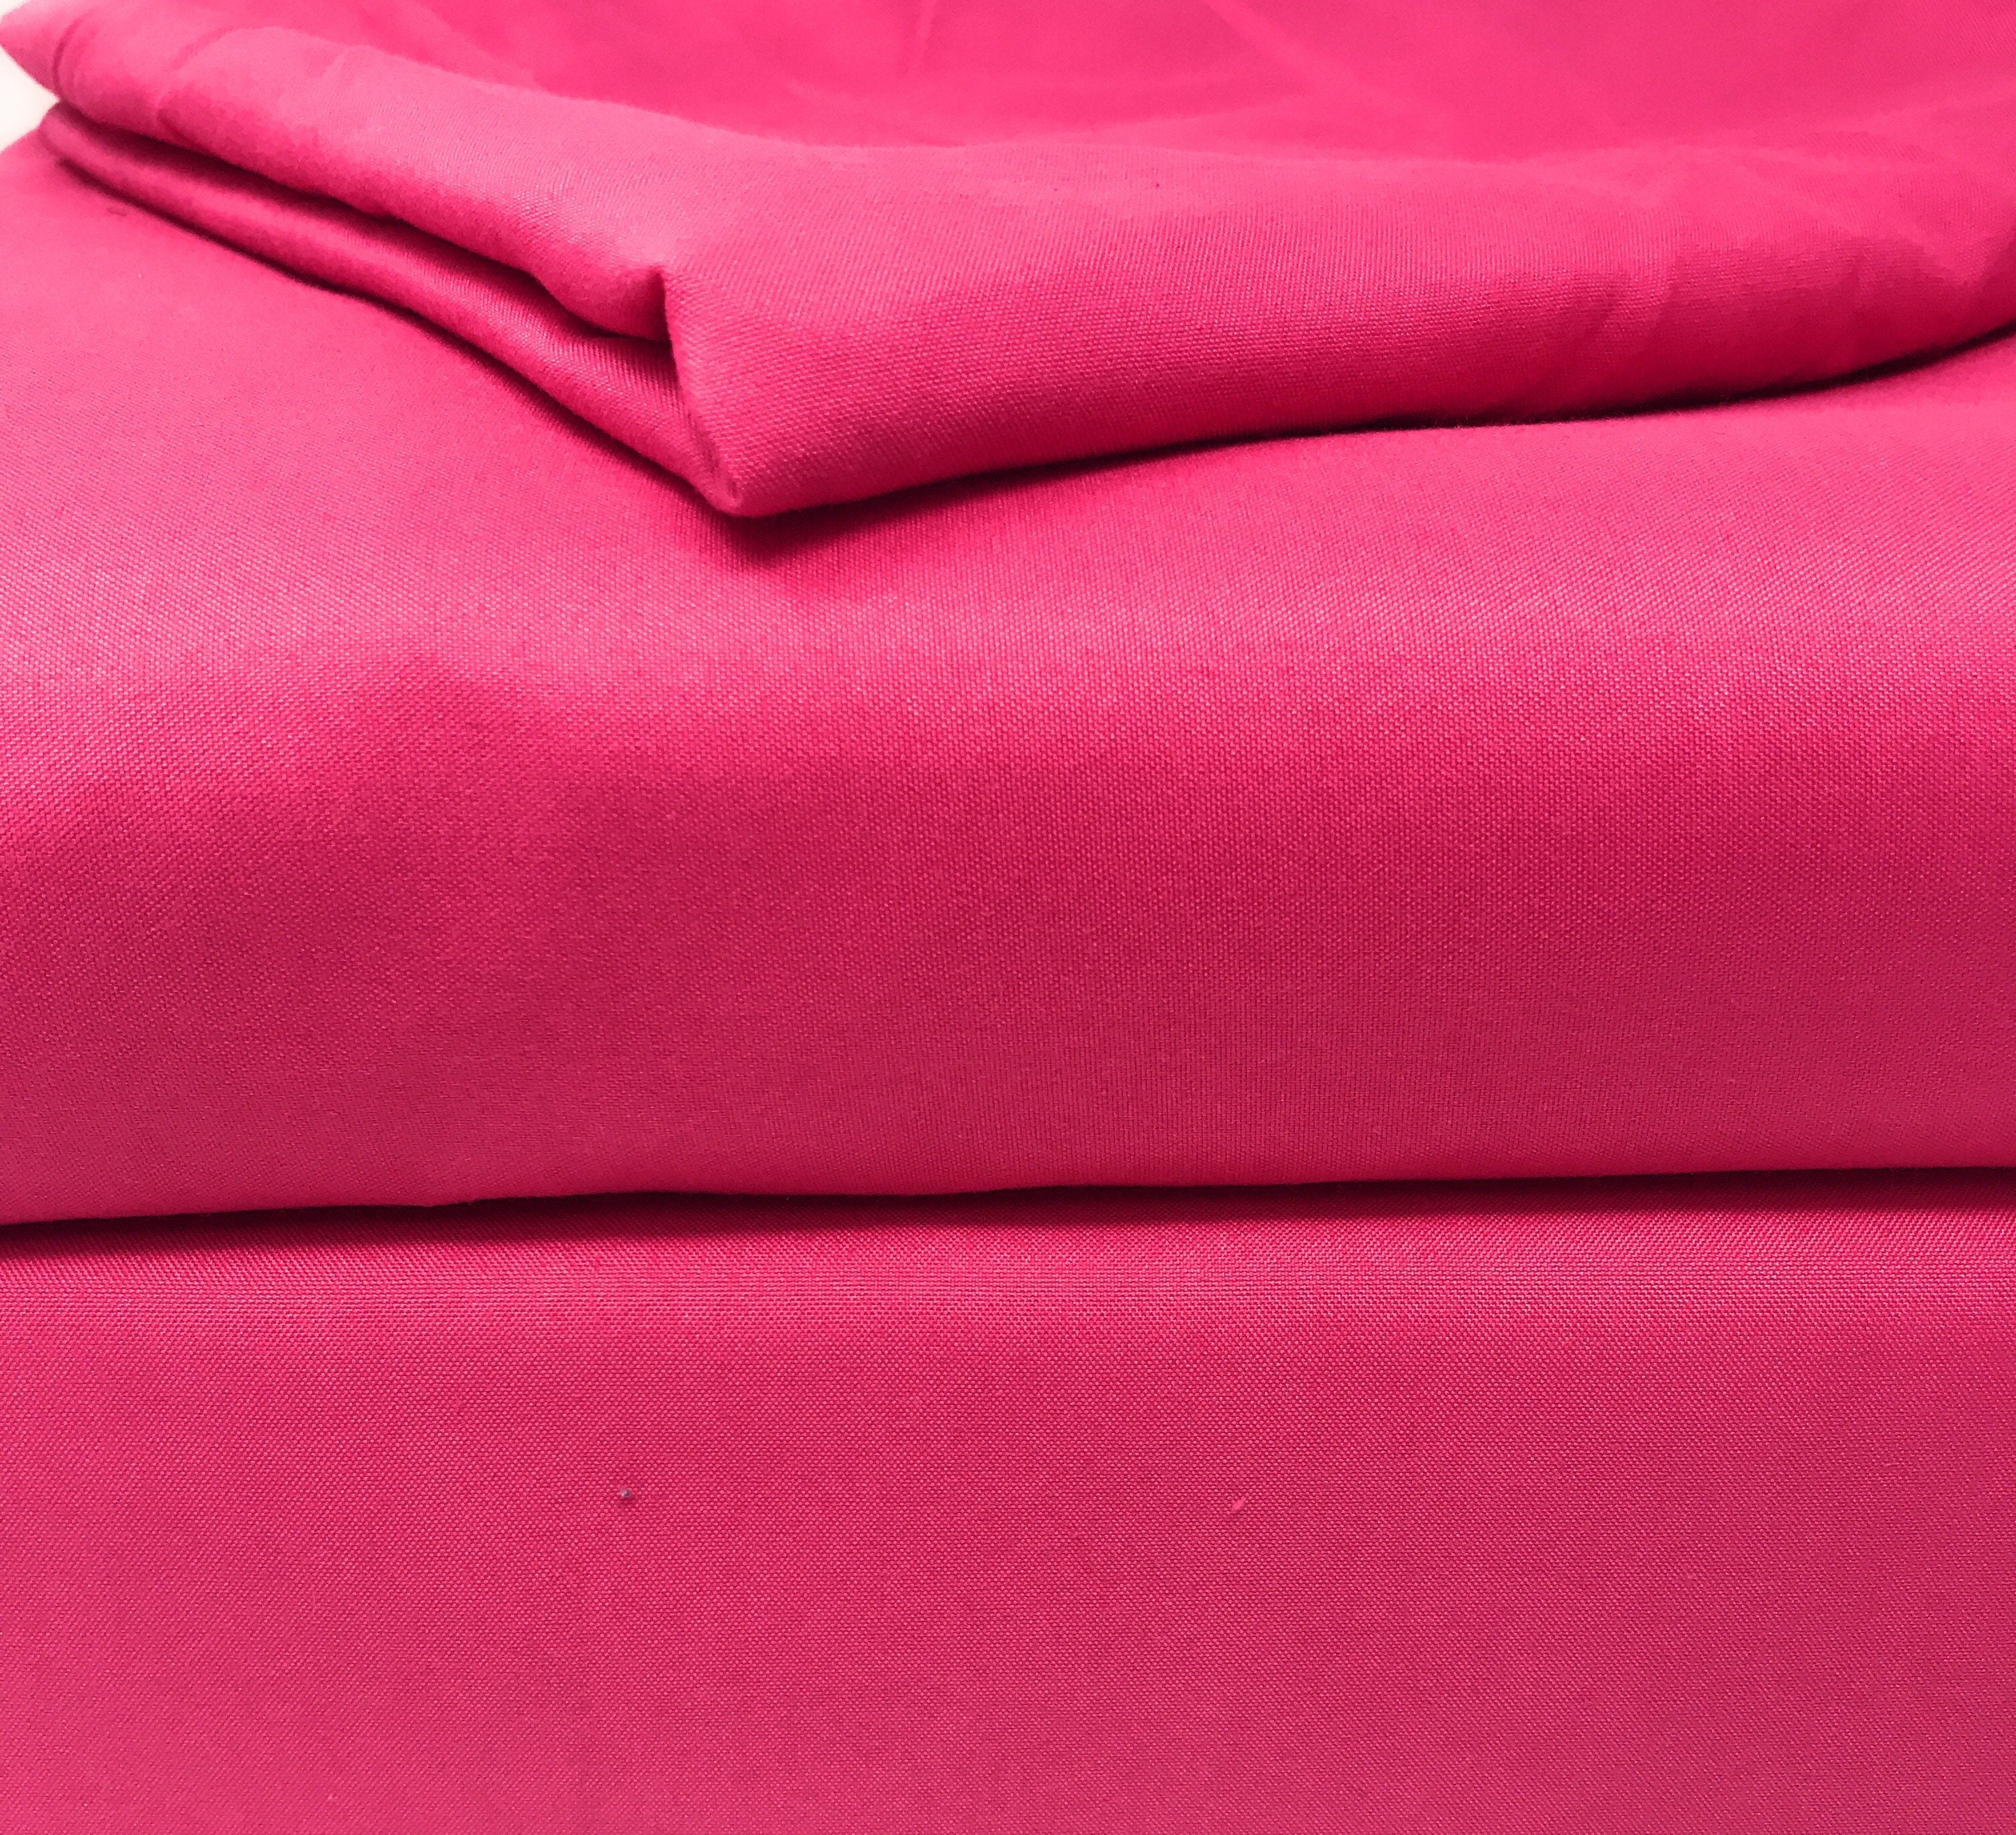 Tache Rose Pink Duvet Cover Set (TA505-RP-DS) - Tache Home Fashion